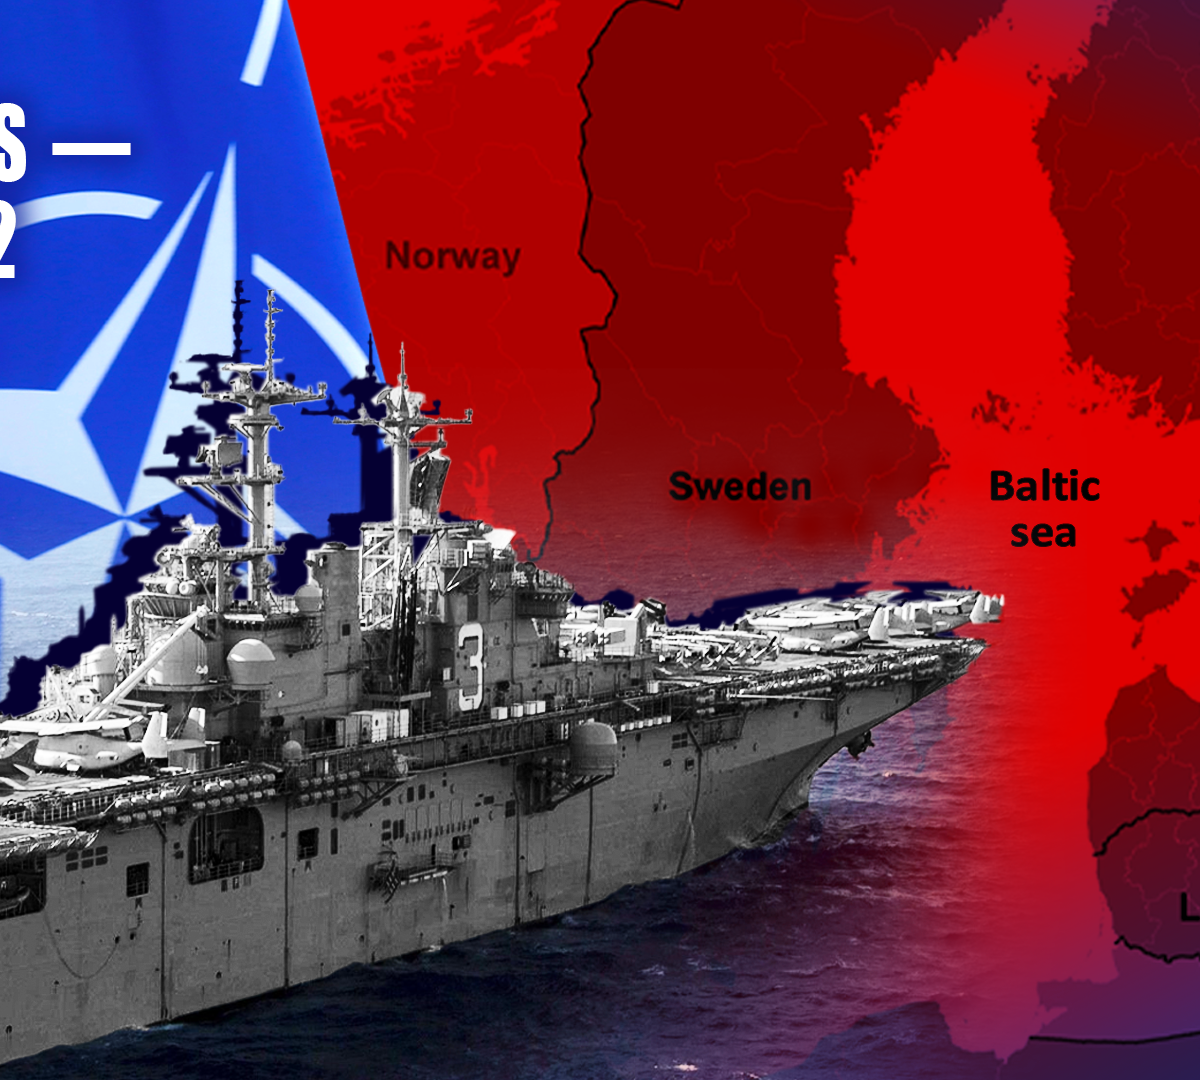 Легко разнести в щепки: о реакции России на маневры НАТО в Балтийском море